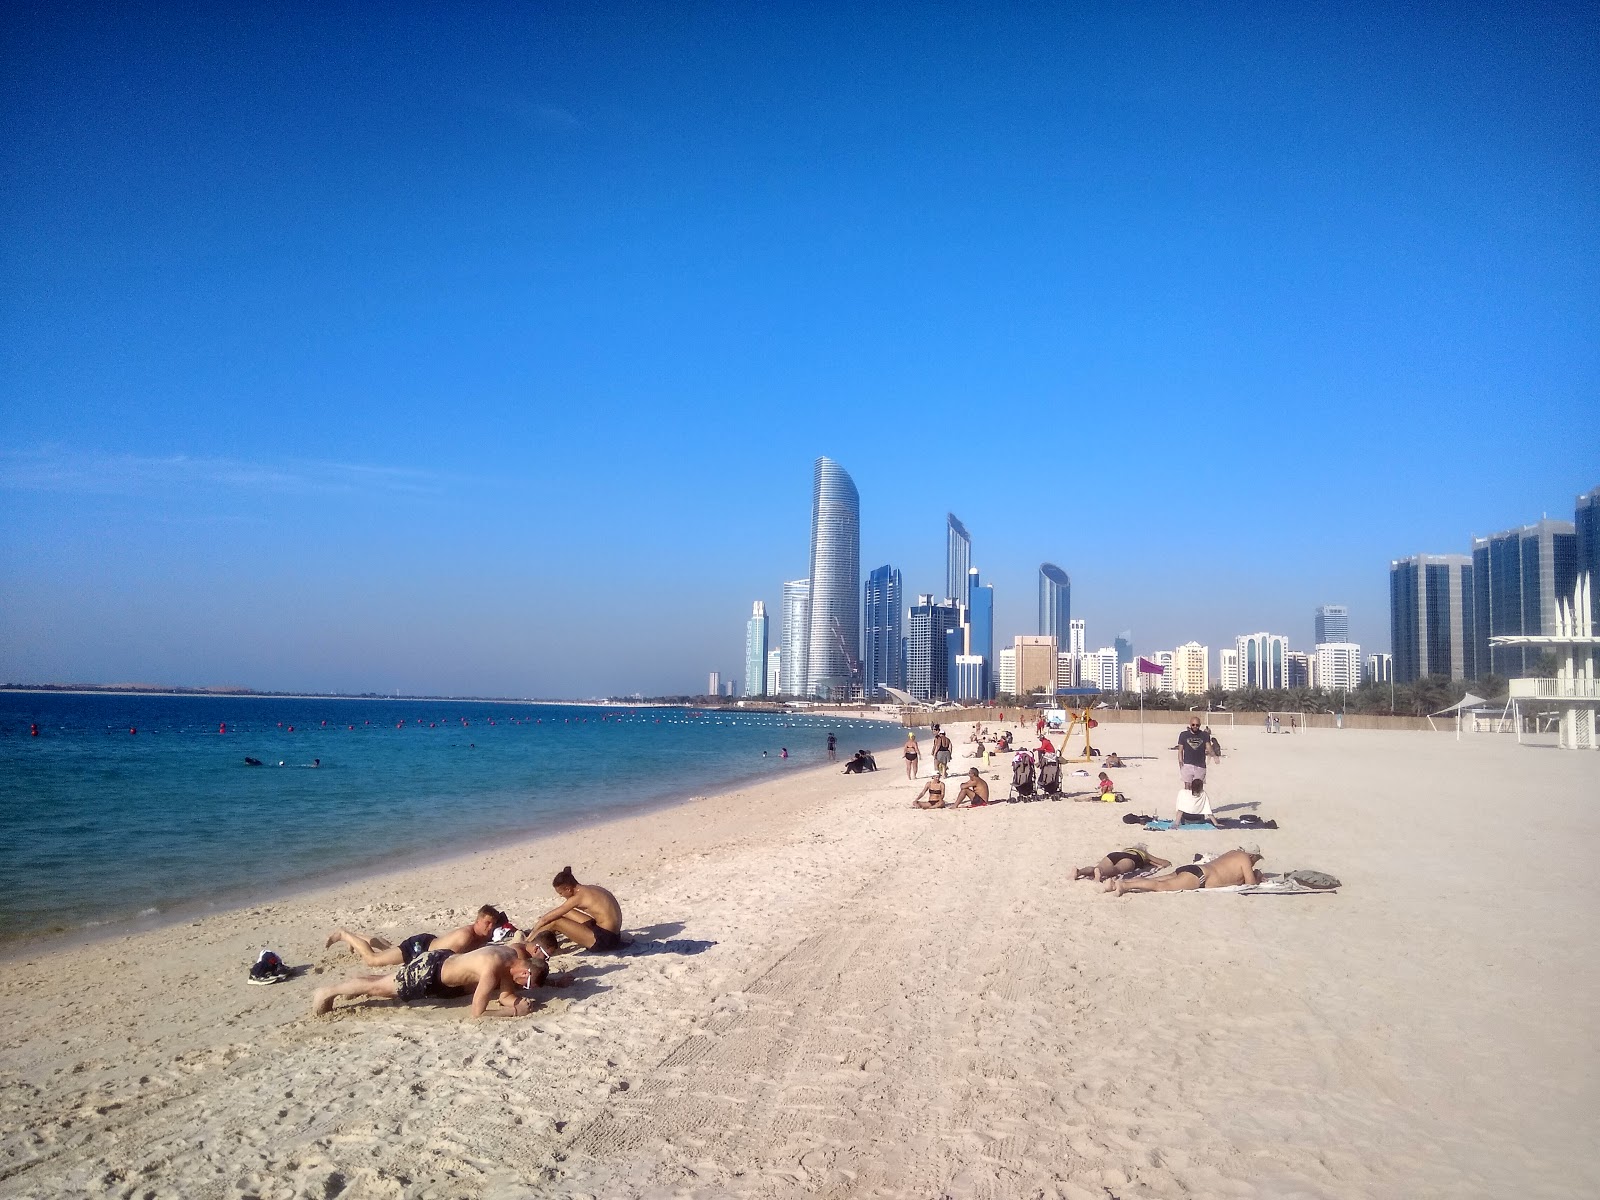 Fotografie cu Corniche beach cu o suprafață de nisip fin alb